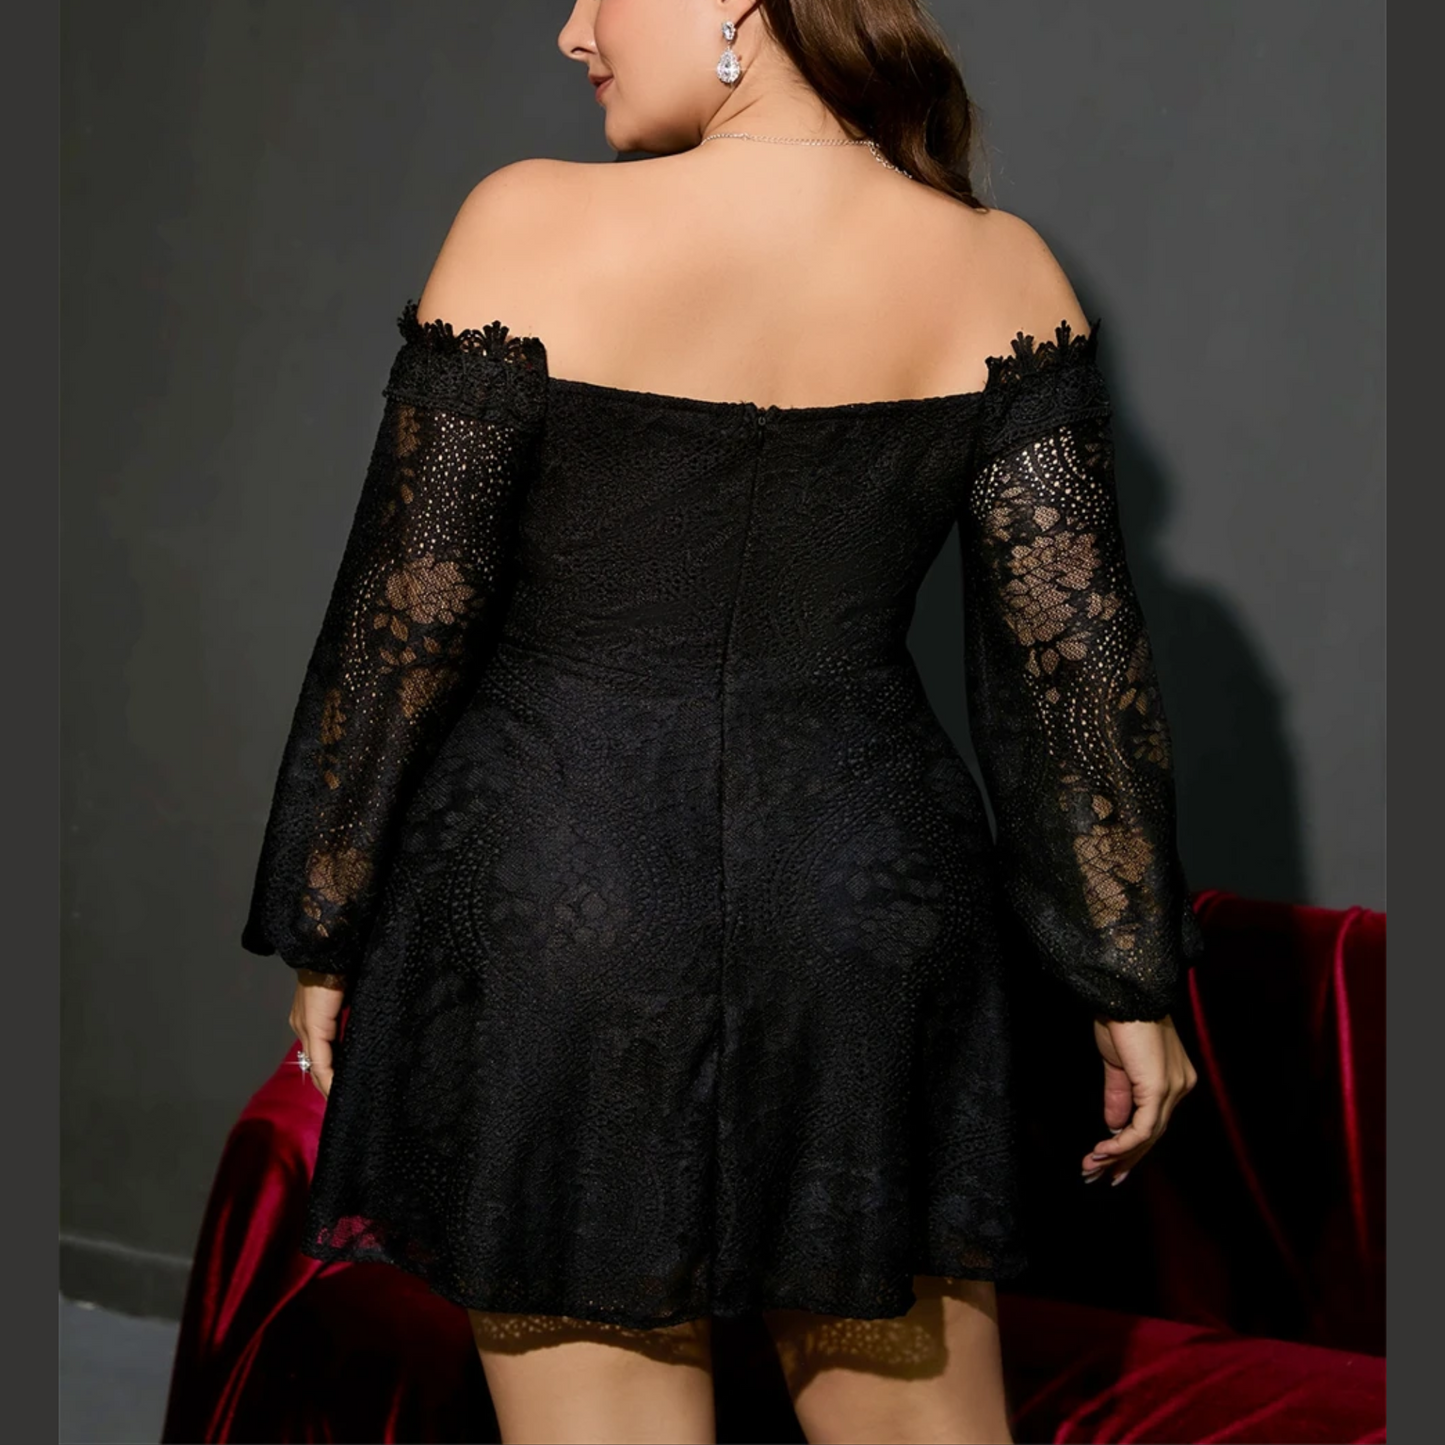 Candy - Black Off Shoulder Plus Size Lace Dress